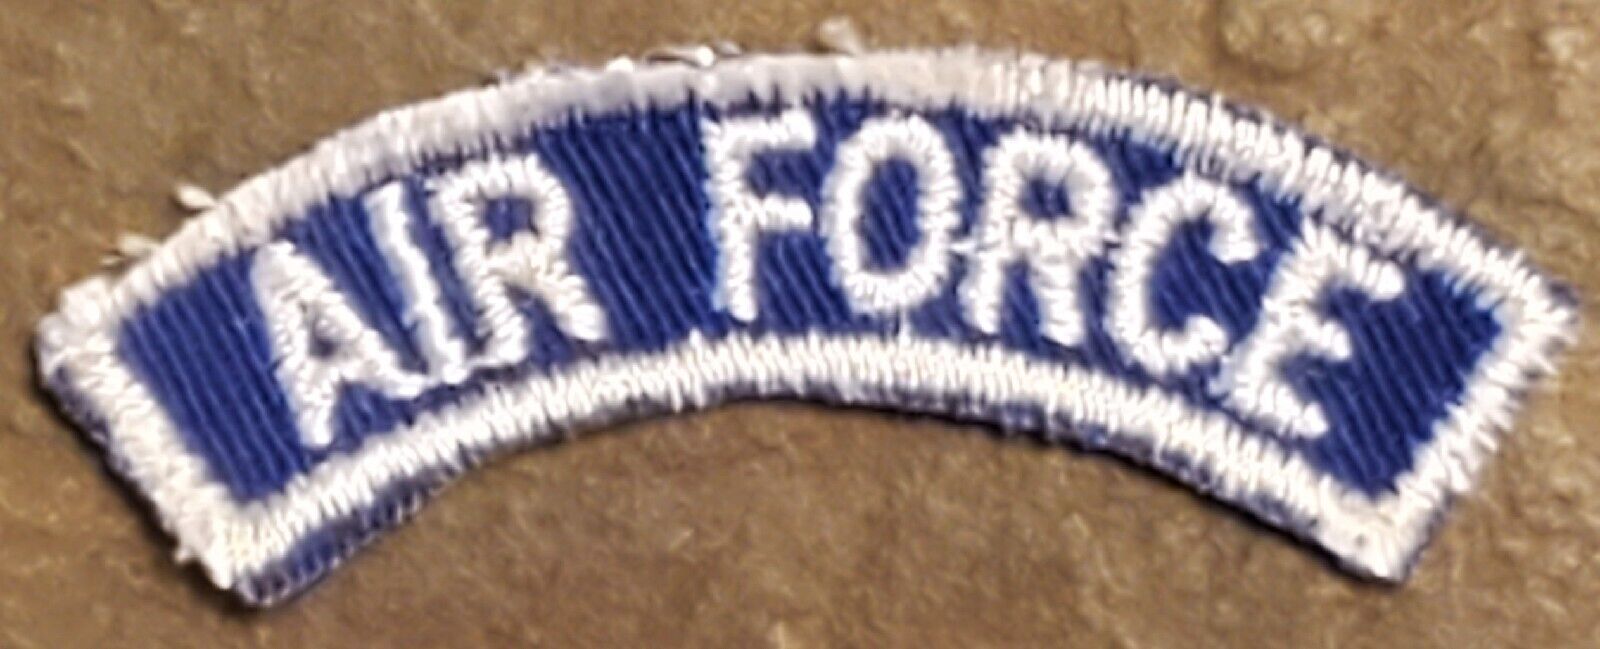 USAF AIR FORCE Shoulder Arc Tab Rocker Cut COLOR PATCH Blue & White VTG NOS NEW